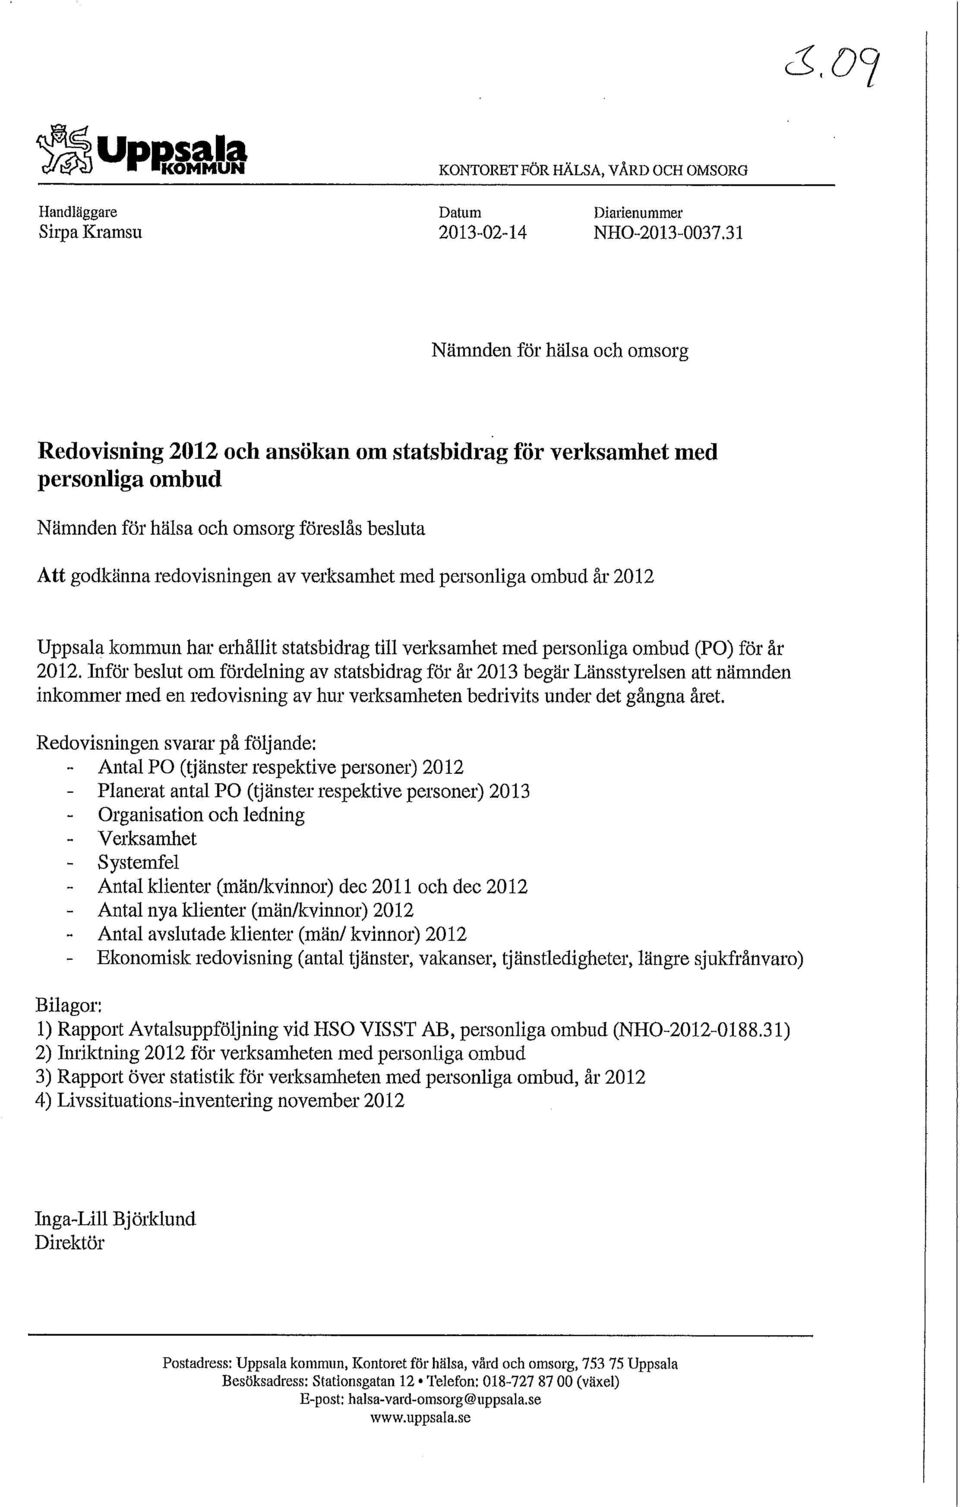 med personliga ombud år 2012 Uppsala kommun har erhållit statsbidrag till verksamhet med personliga ombud (PO) för år 2012.